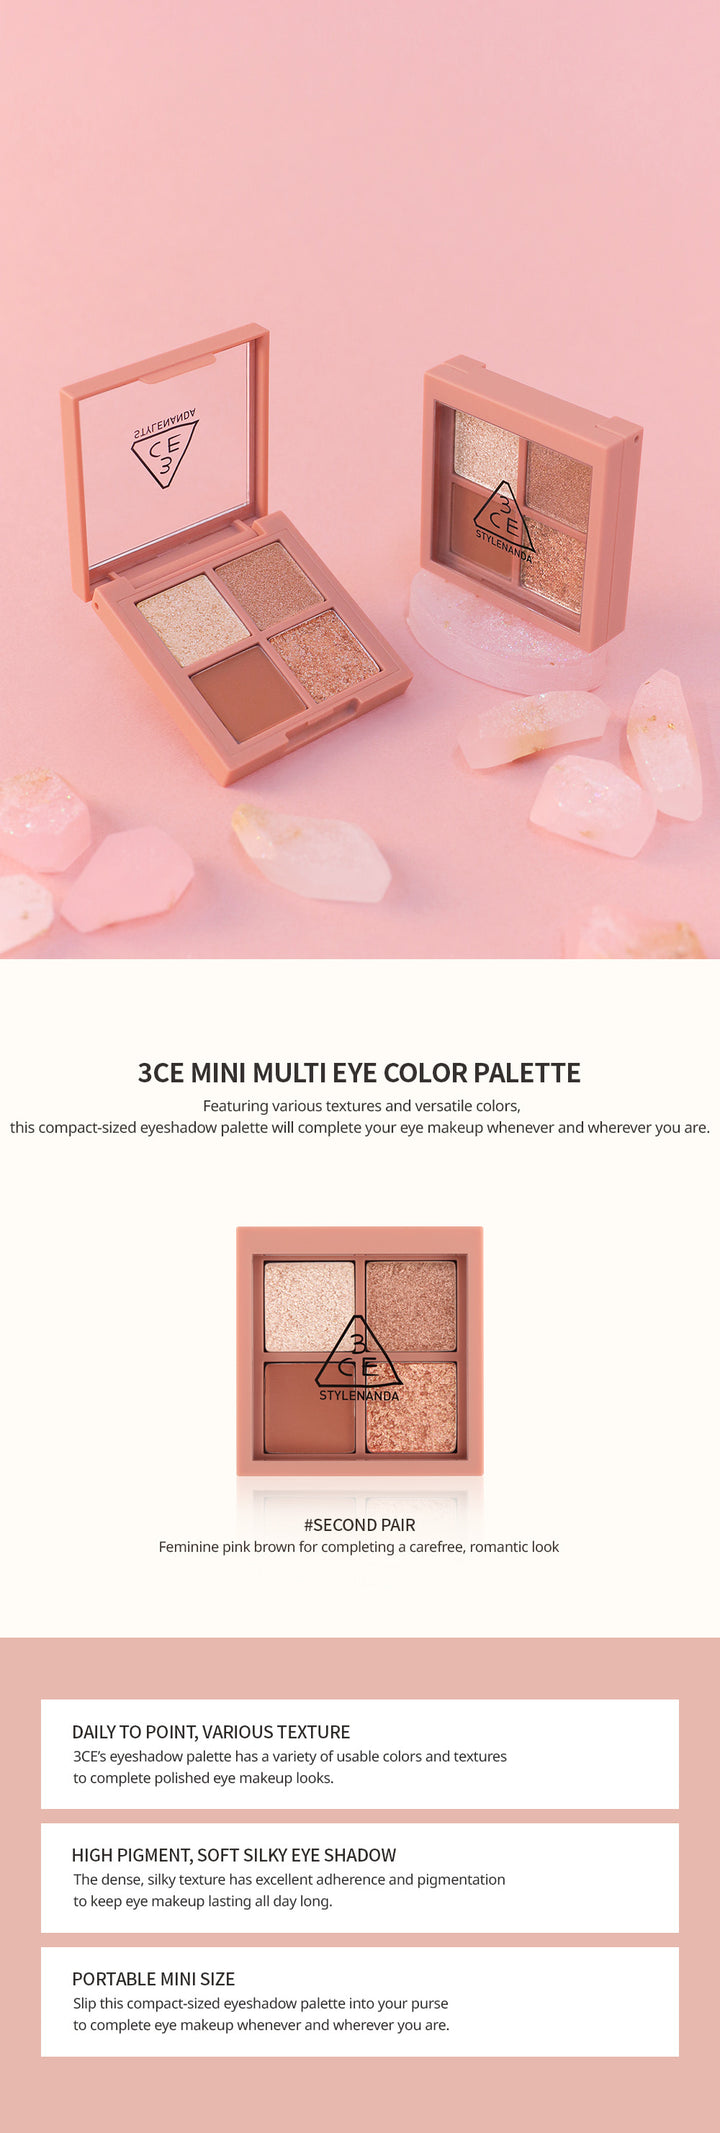 3CE Mini Multi Eye Color Palette #Second Pair